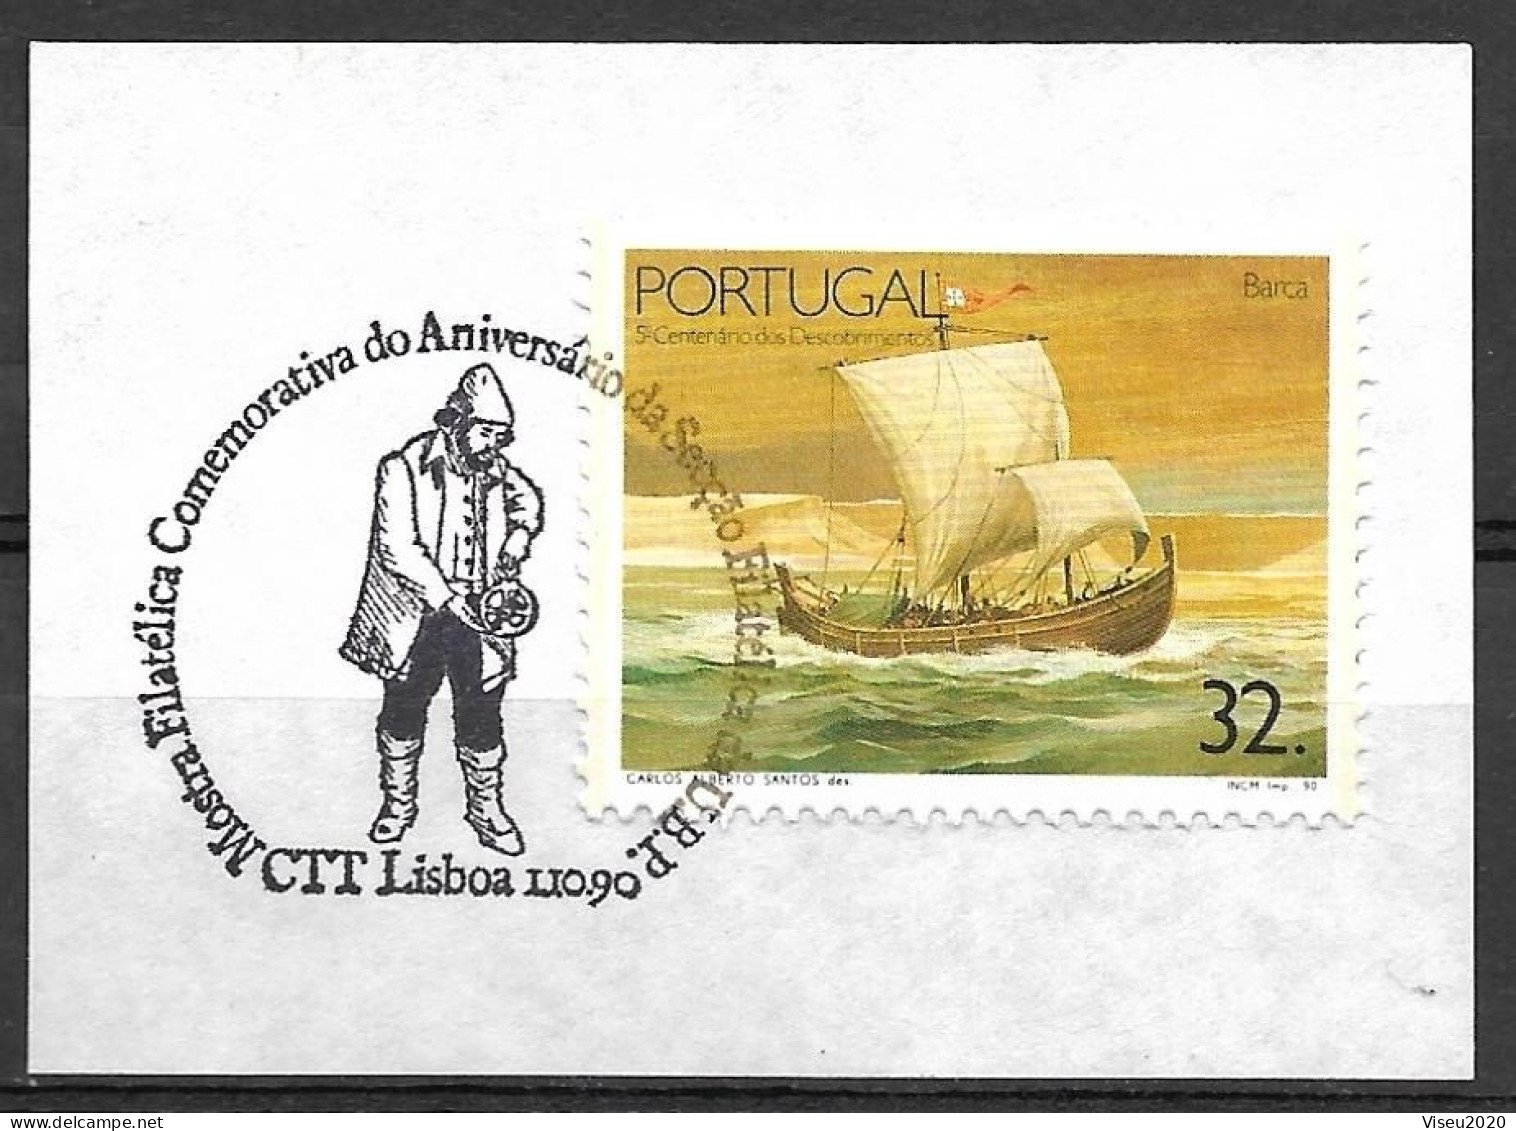 Portugal, 1990 - Mostra Filatélica - Lisboa 90 - FDC